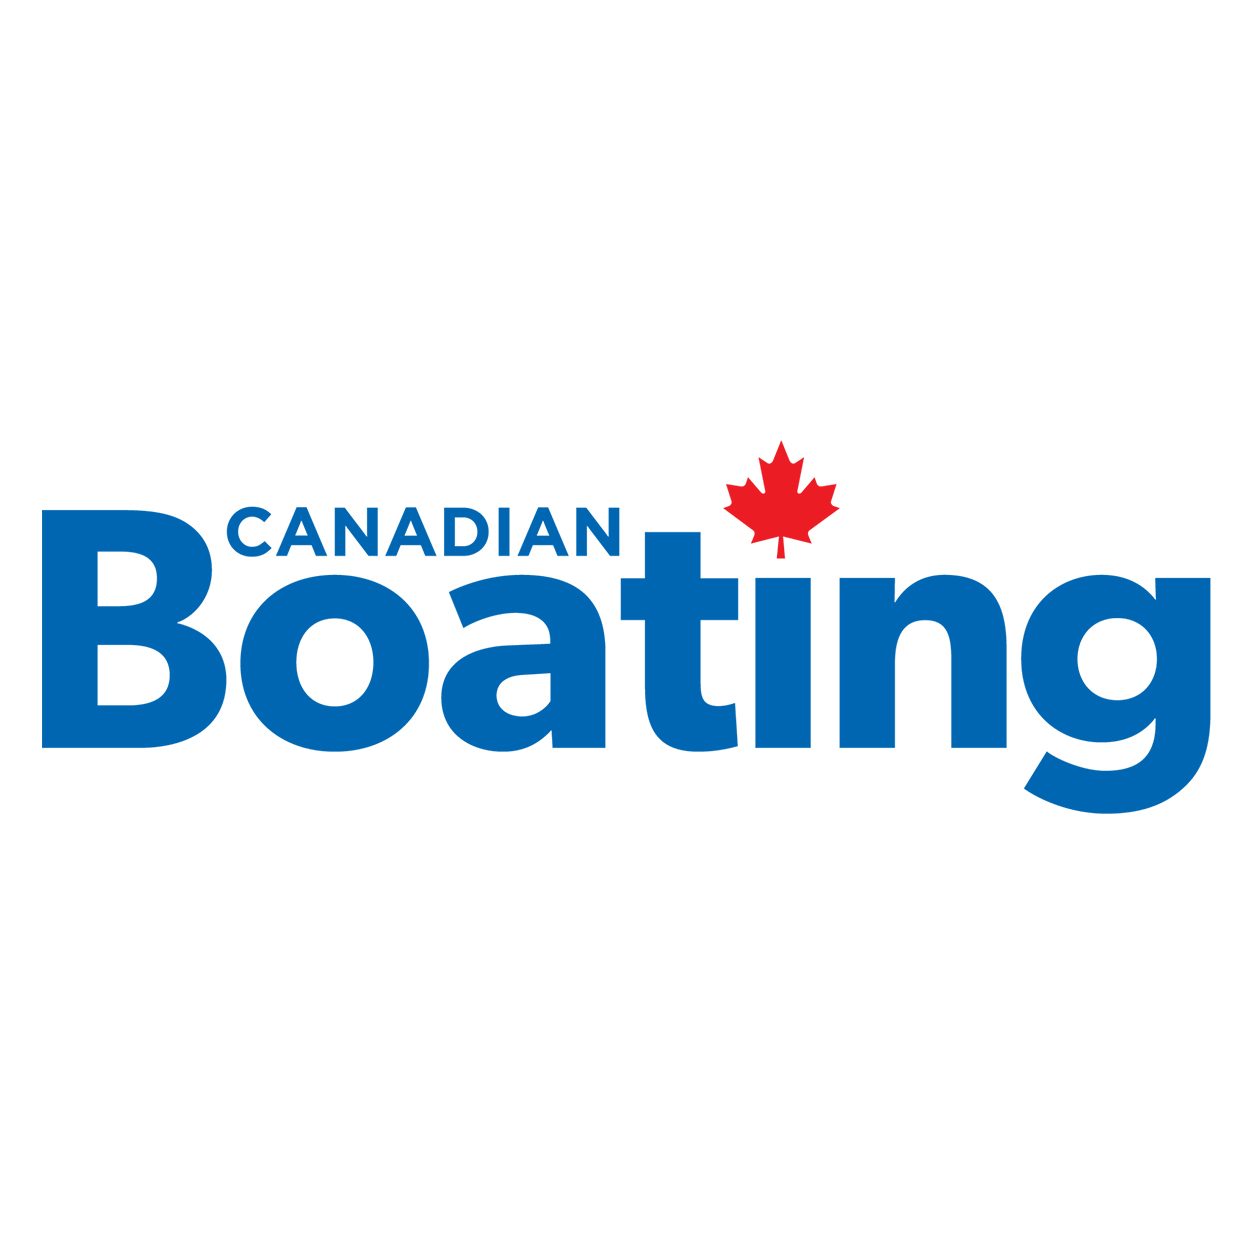 Canadian Boating logo